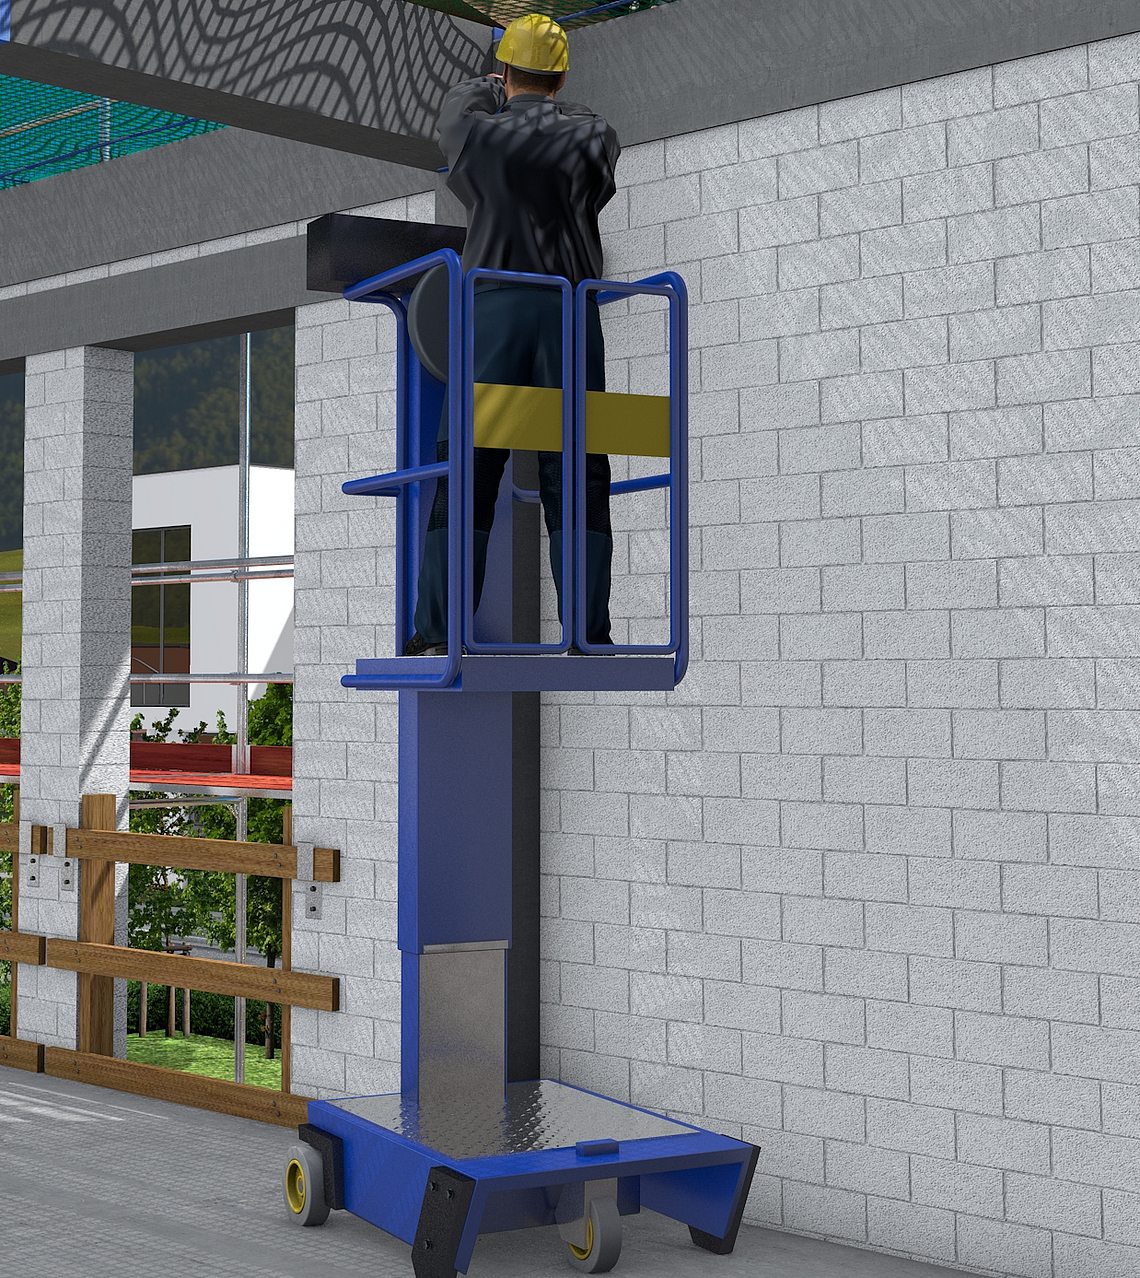 Ein Bauarbeiter bei Arbeit auf einer Kleinsthubarbeitsbühne.
